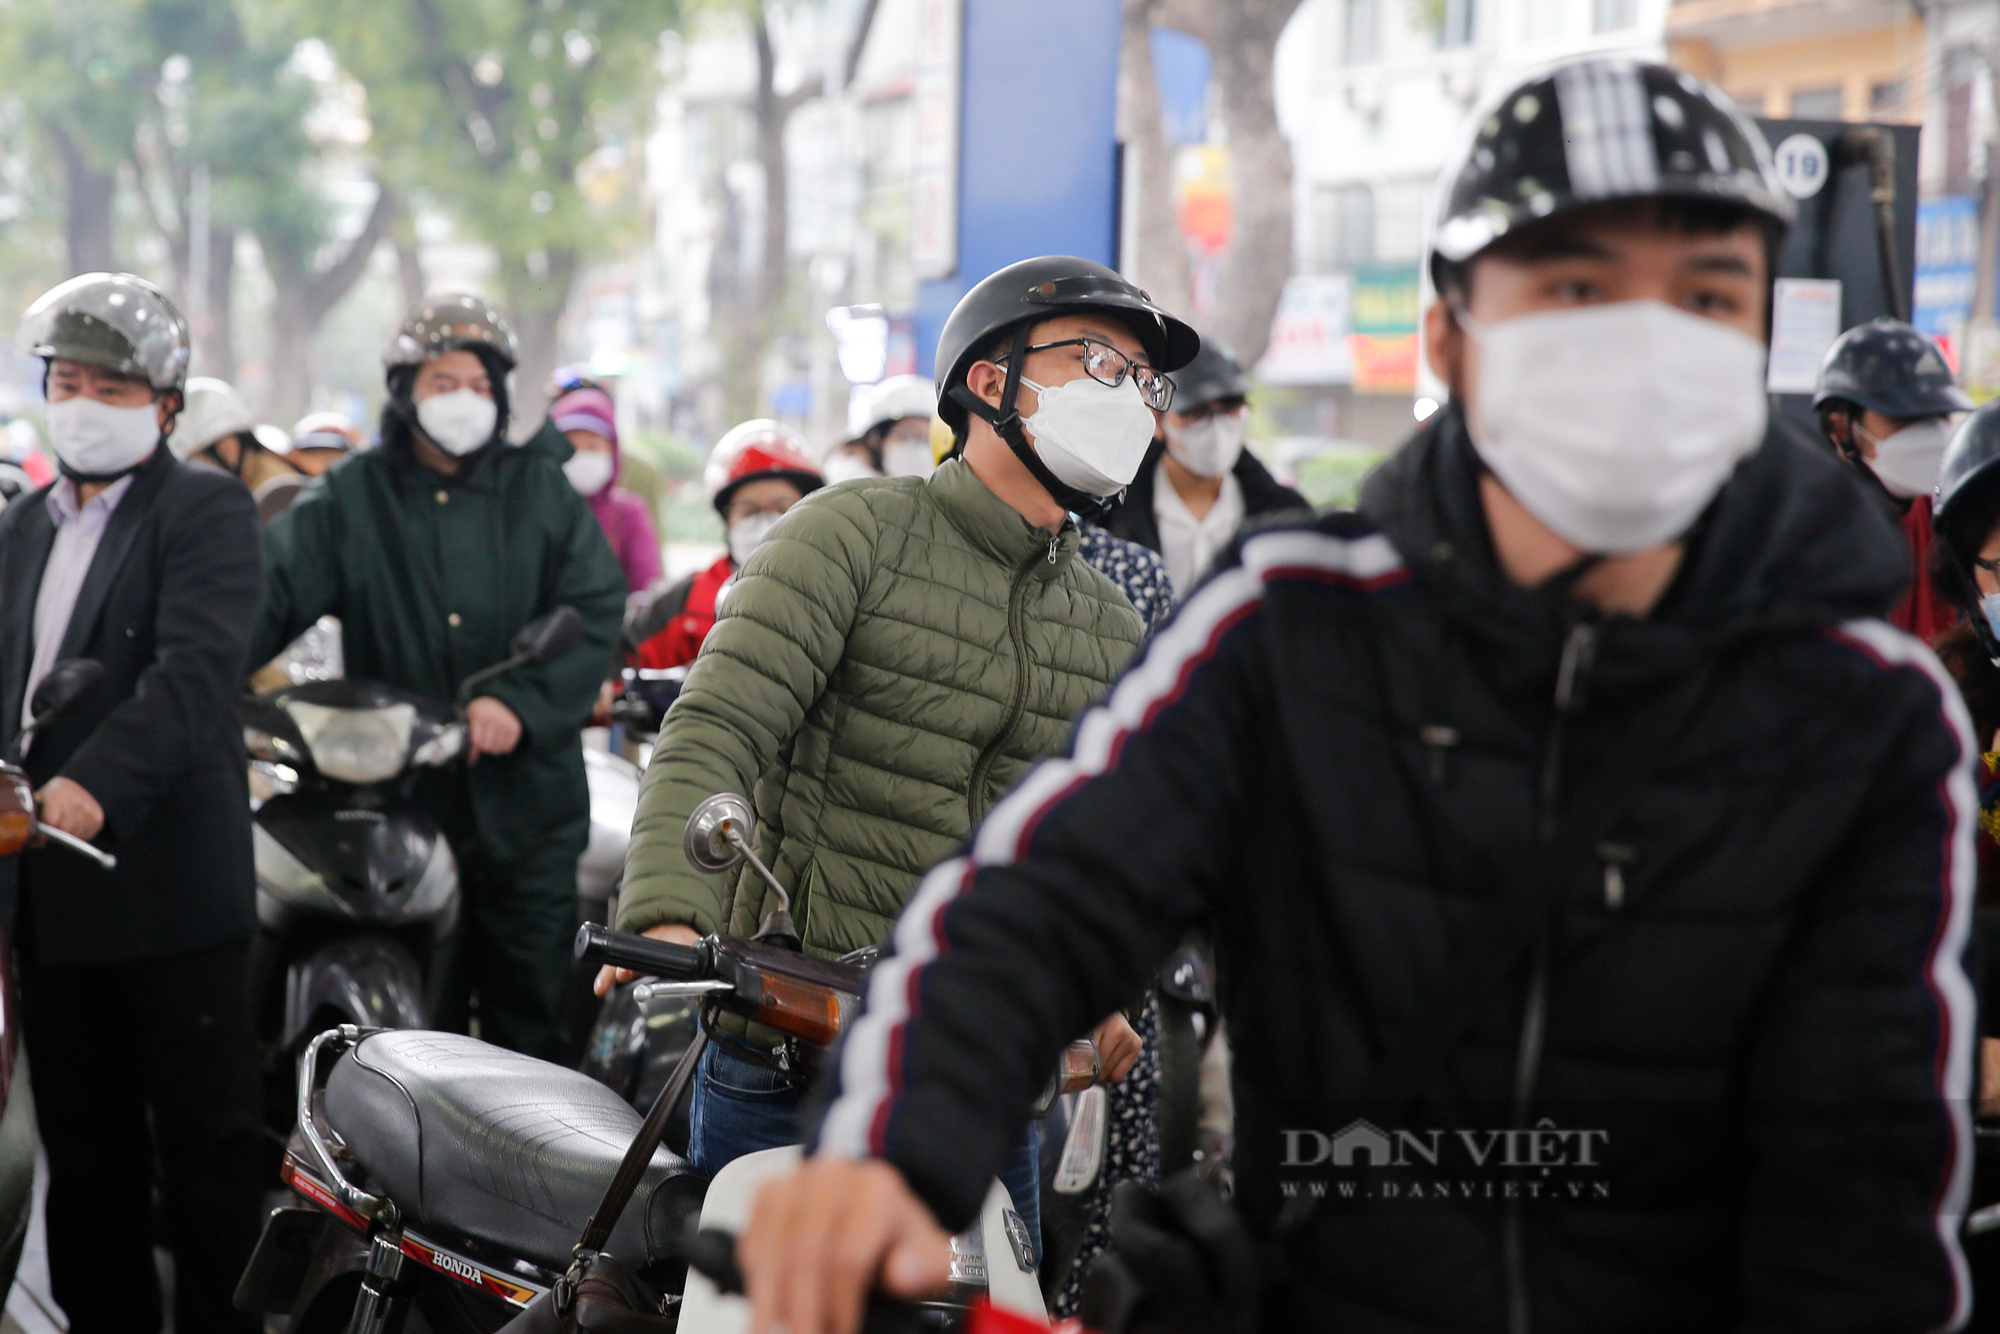 Các cây xăng tại Hà Nội đông nghịt, người dân đi làm muộn vì chờ đổ xăng - Ảnh 5.